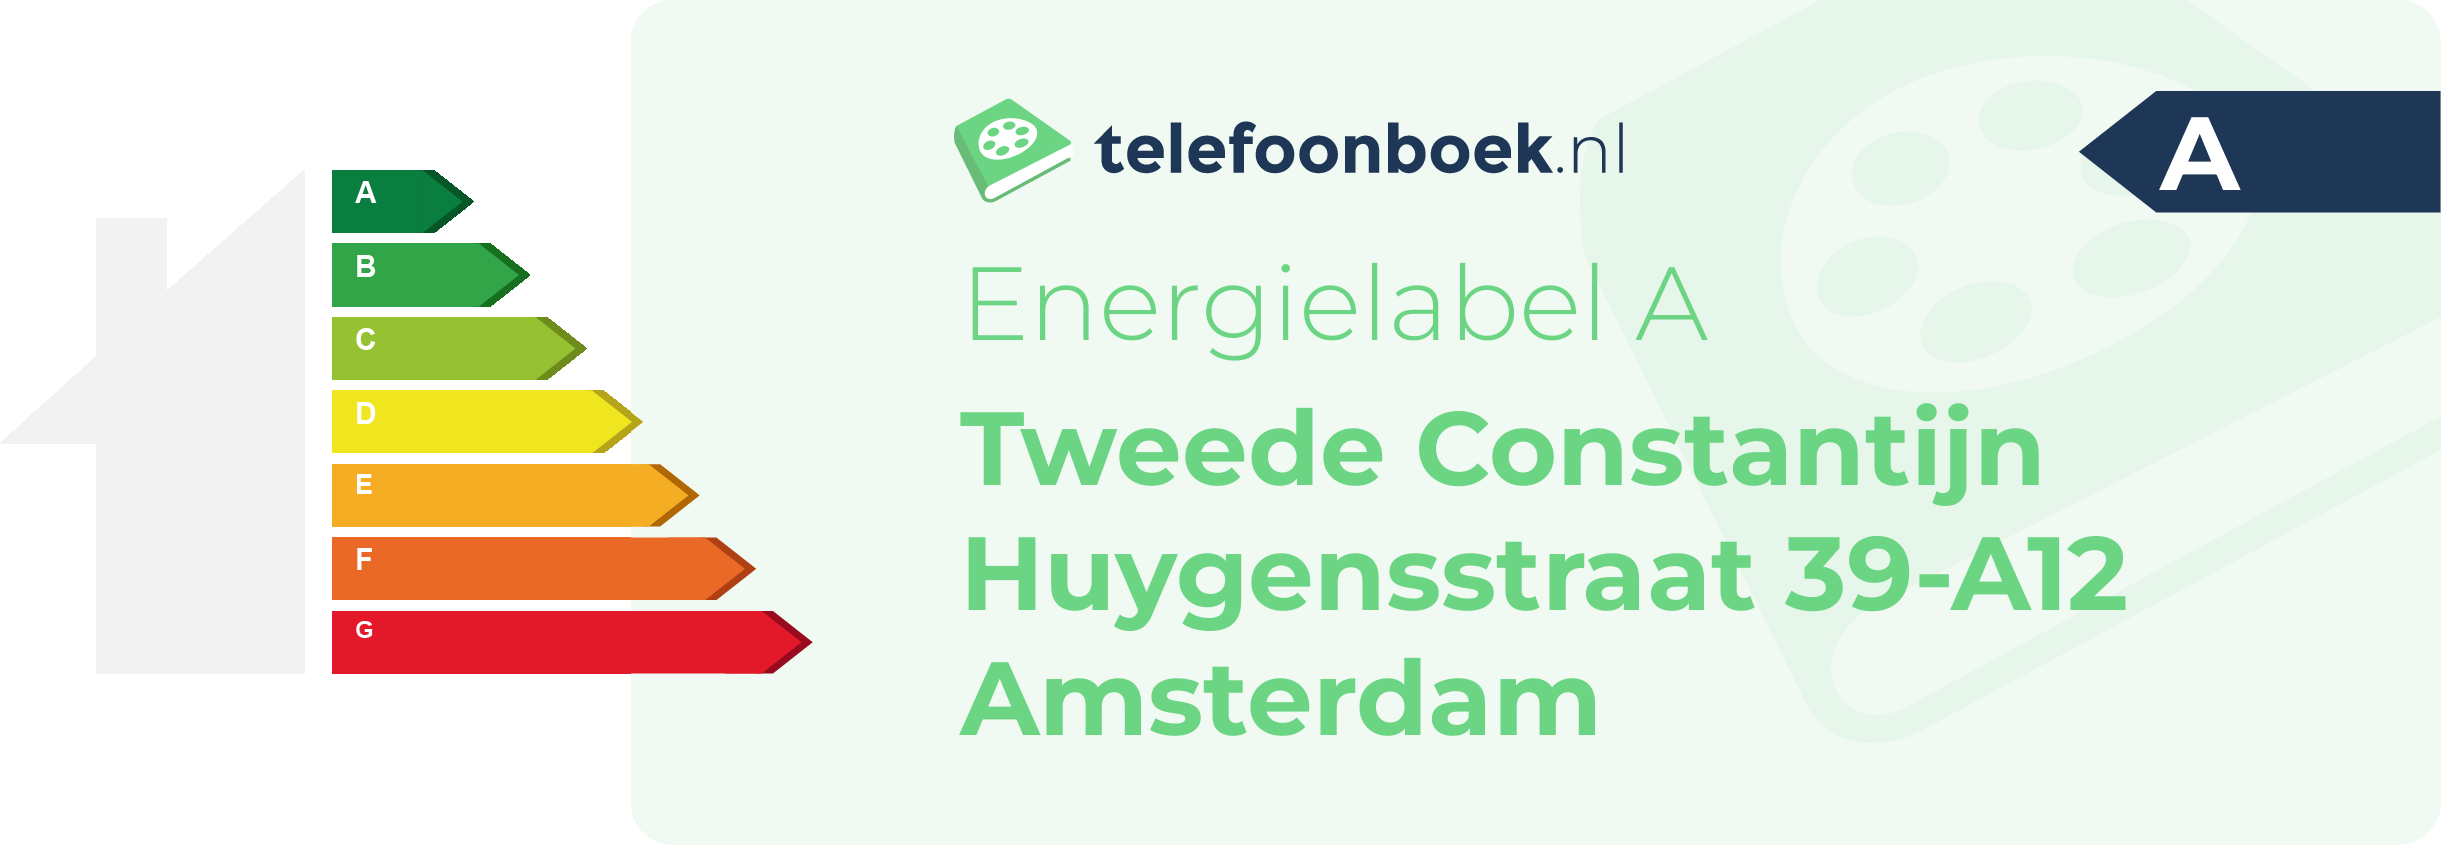 Energielabel Tweede Constantijn Huygensstraat 39-A12 Amsterdam